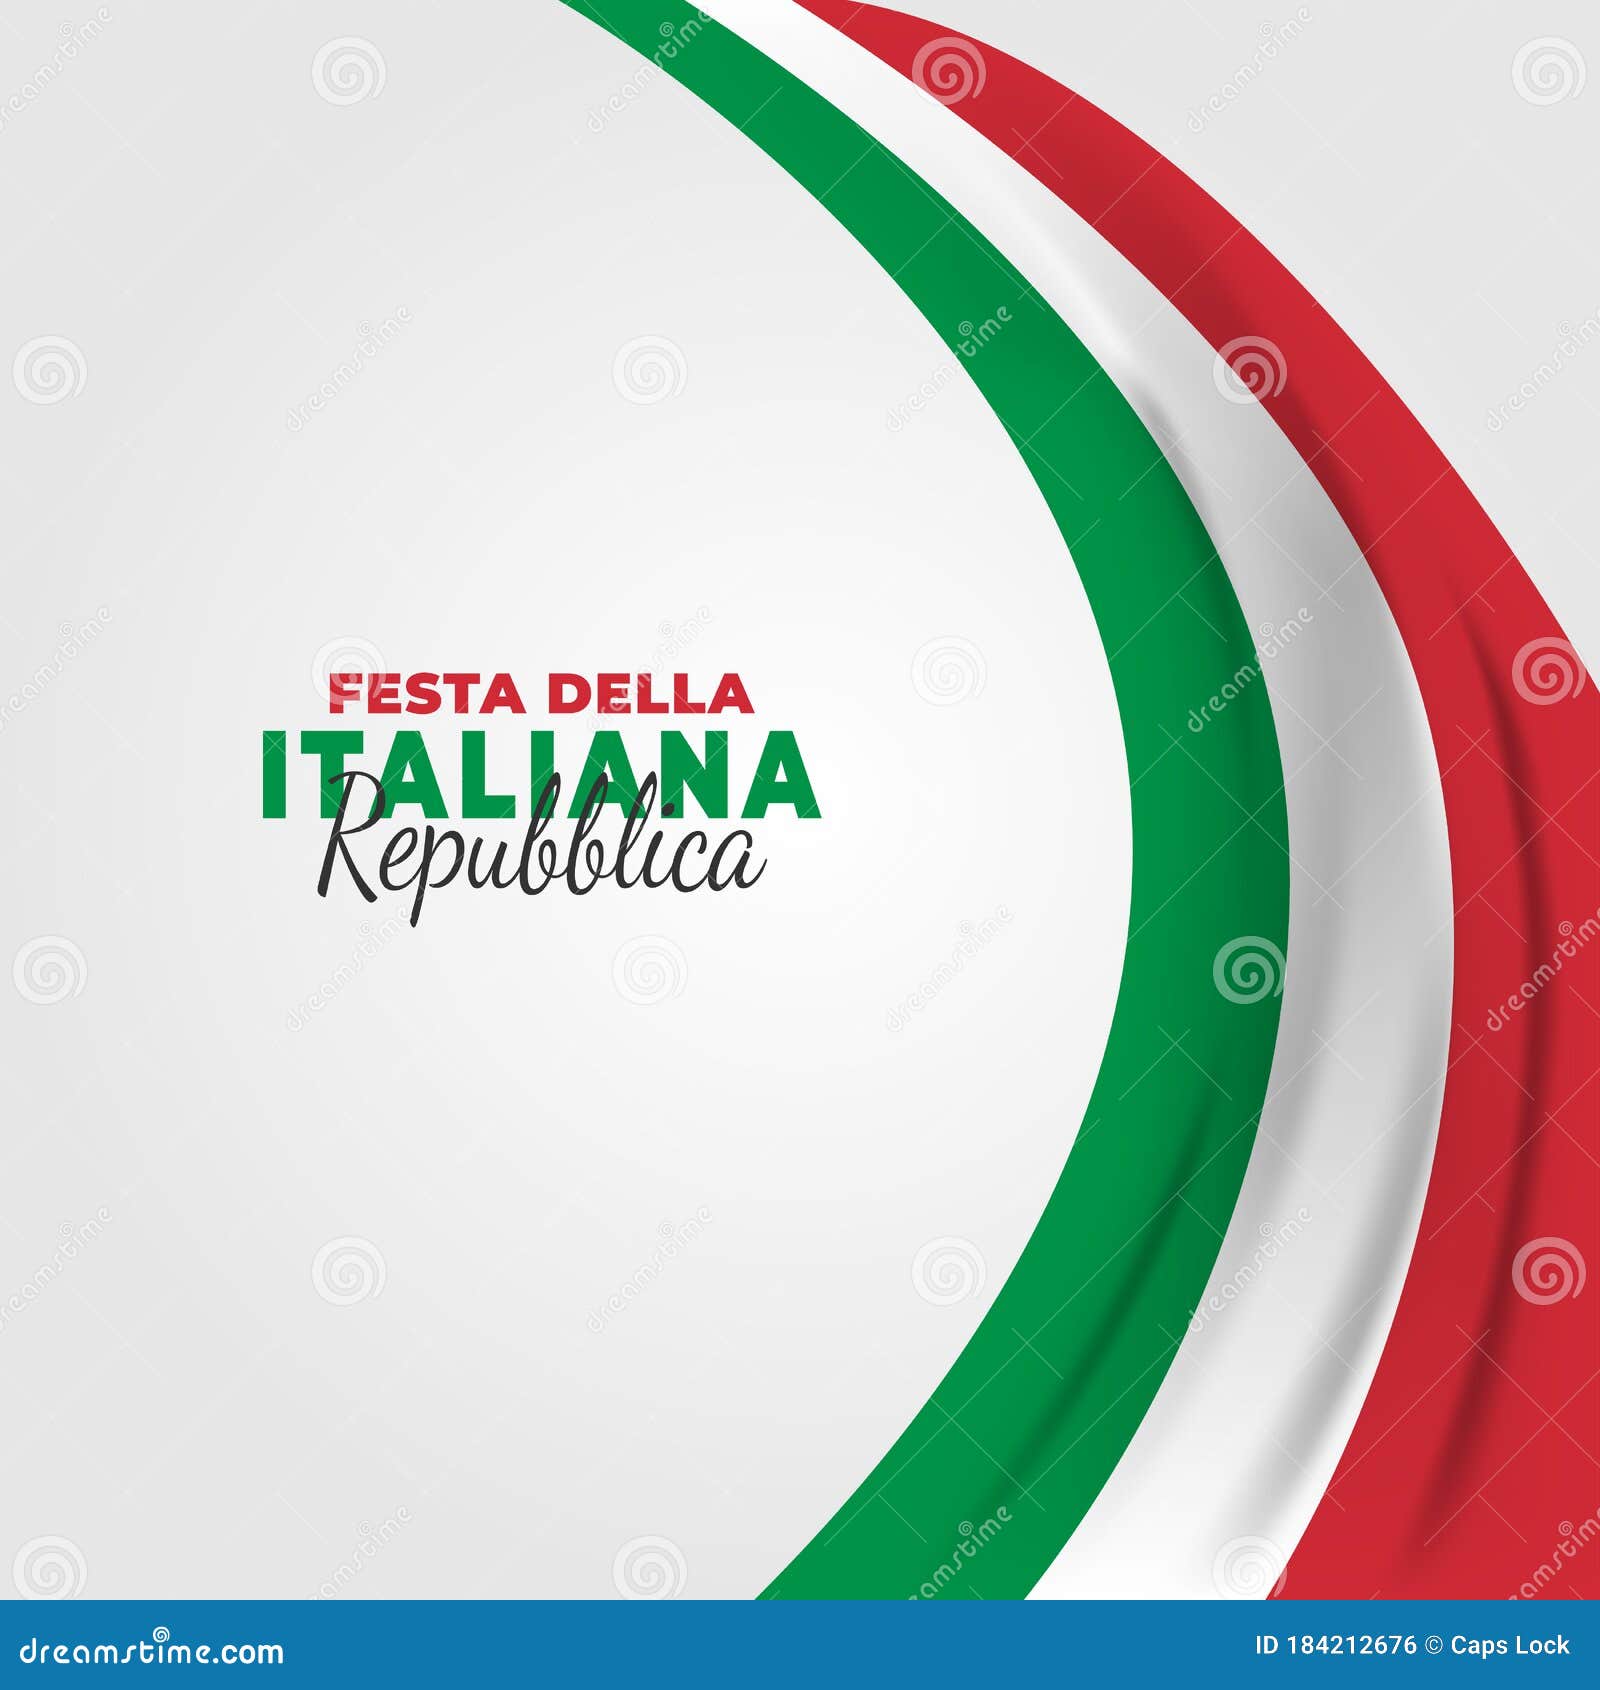 Republic Day of Italy Italy Festa Della Repubblica Italiana. Stock